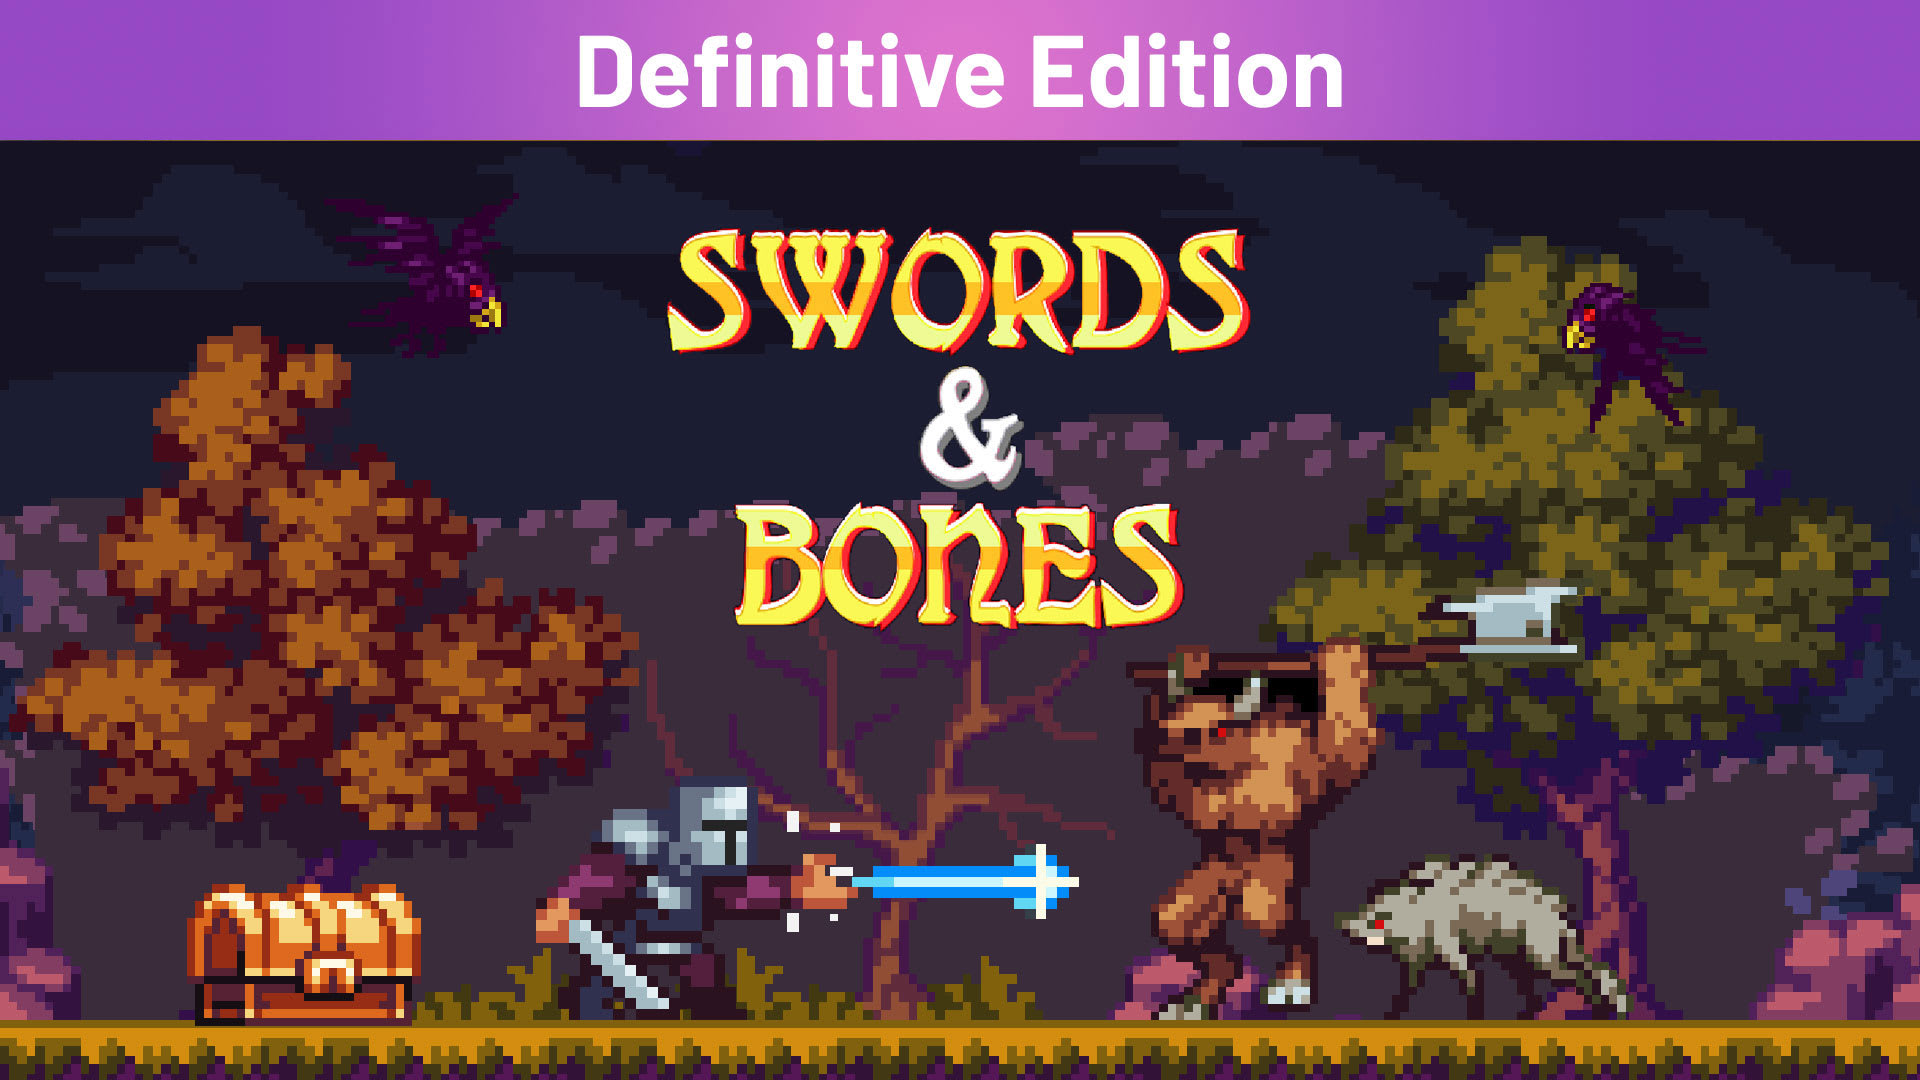 Swords & Bones Definitive Edition 1